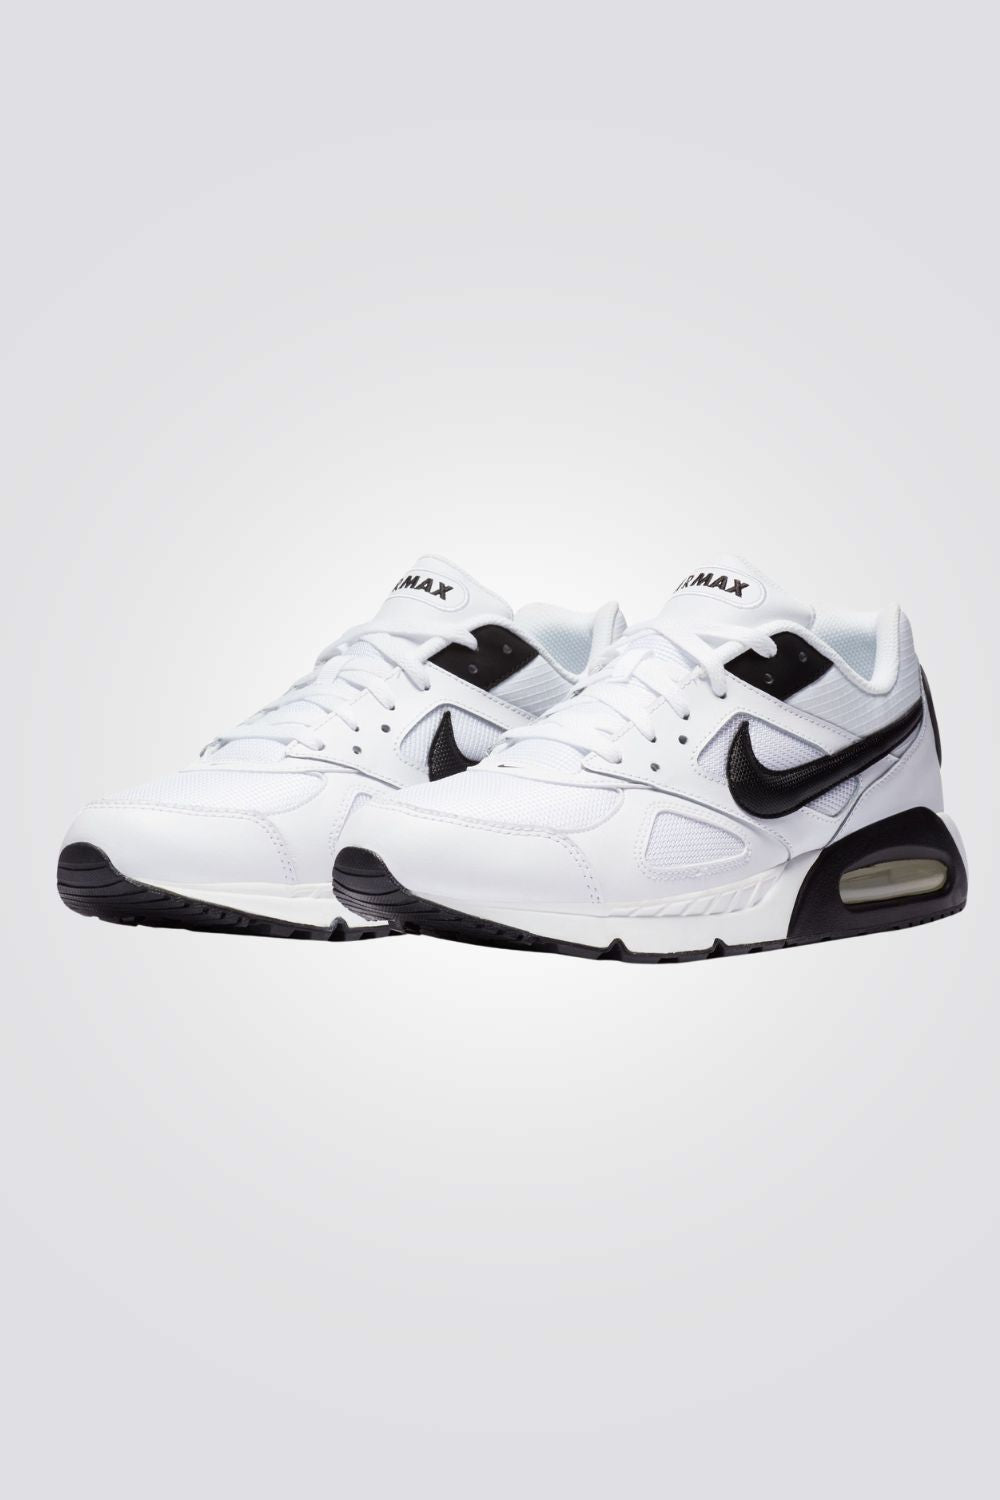 נעלי ספורט לגברים Air Max IVO בצבע לבן ושחור